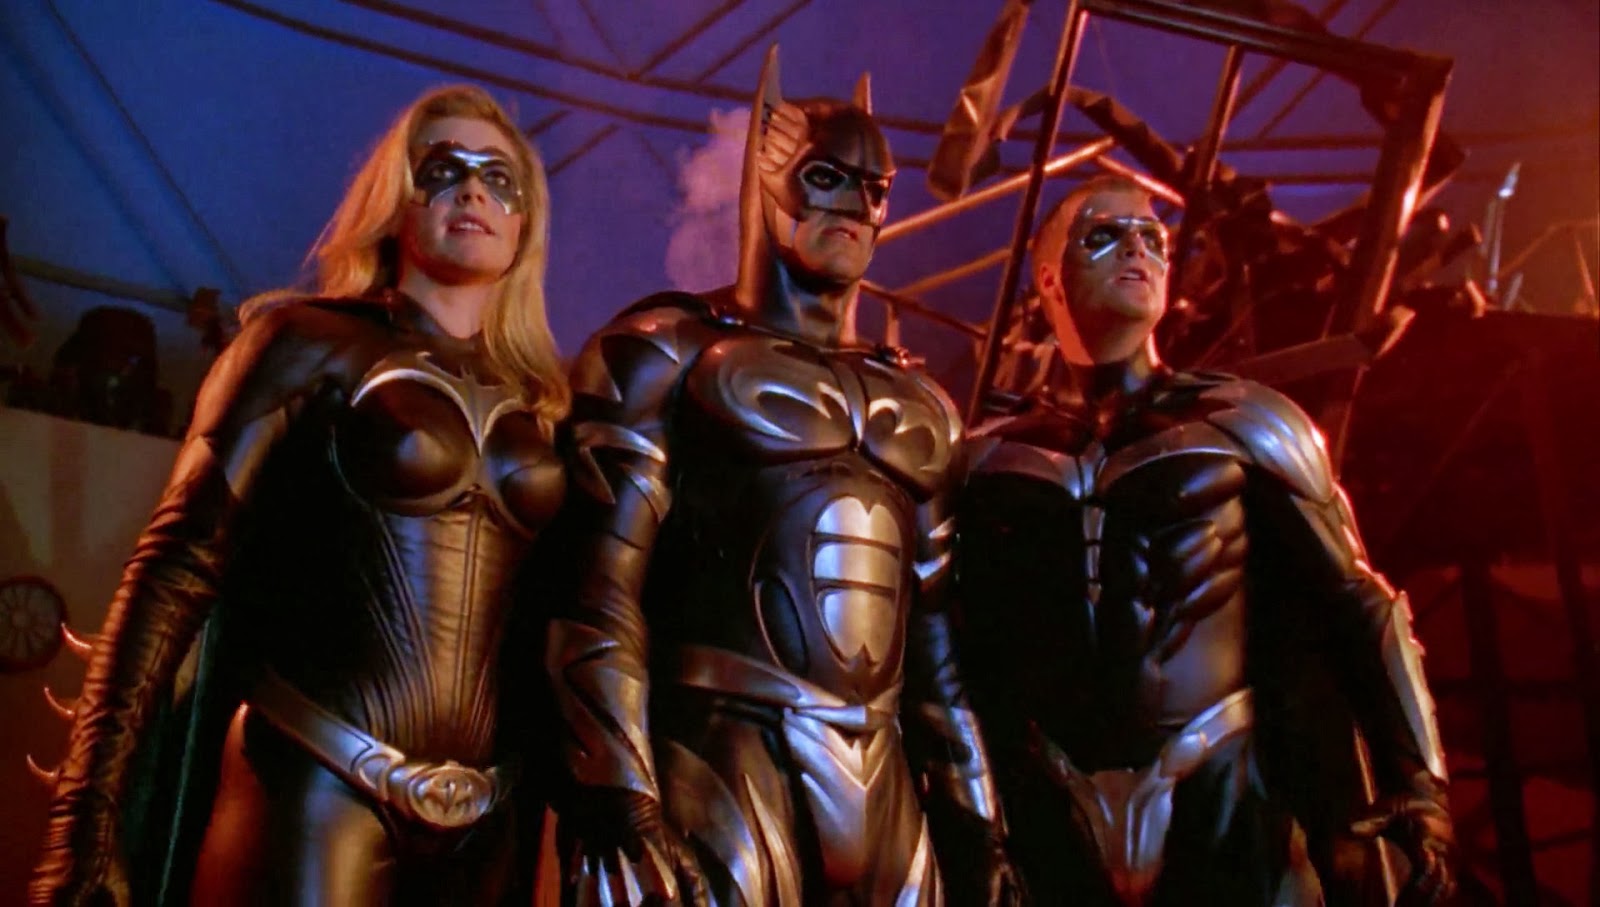 Batman y Robin (1997)